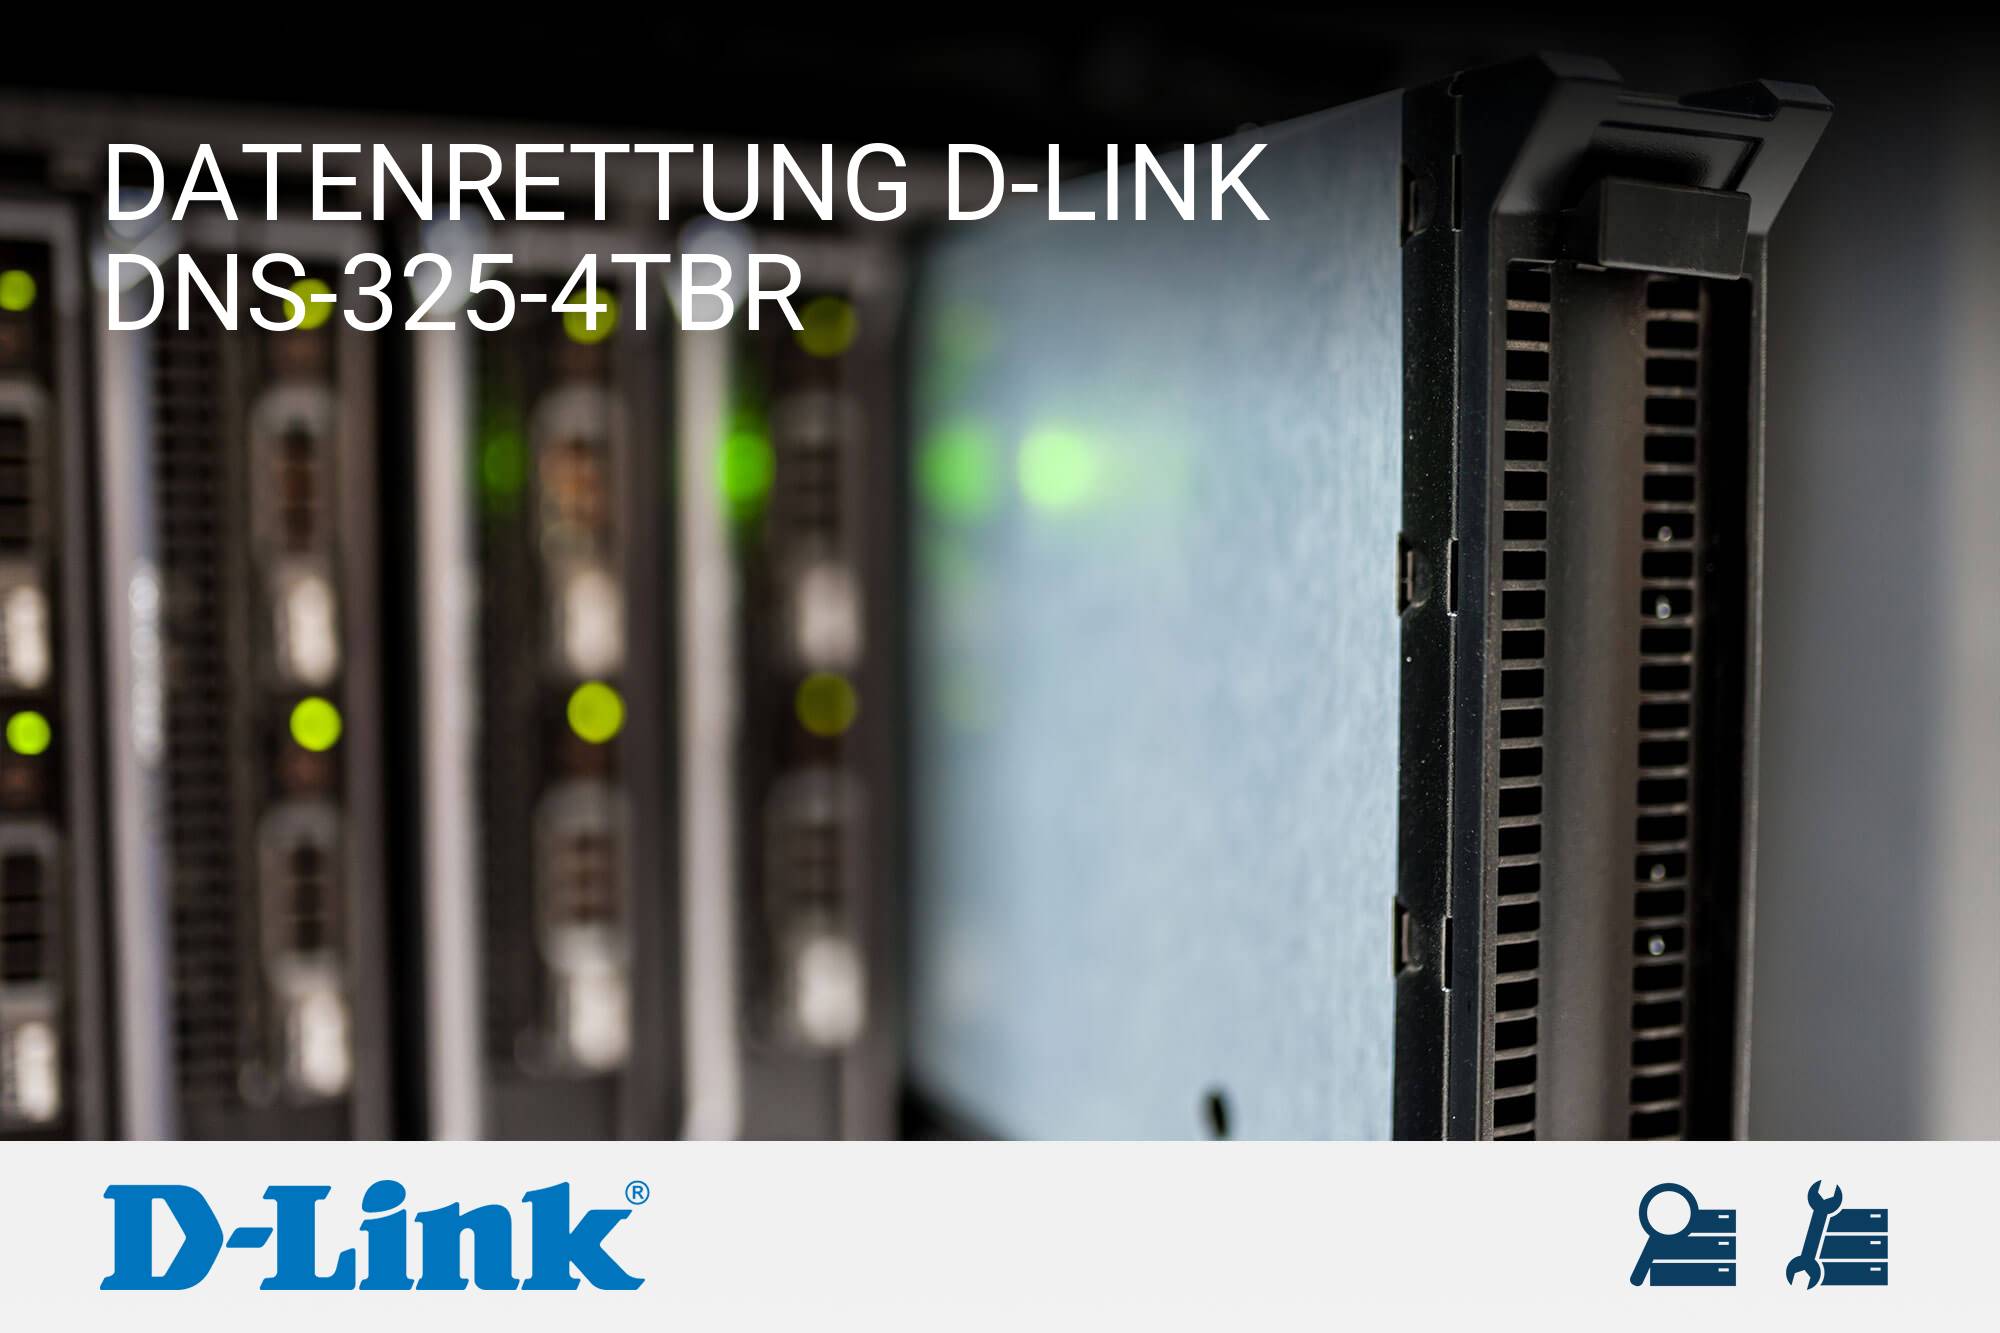 D-Link DNS-325-4TBR